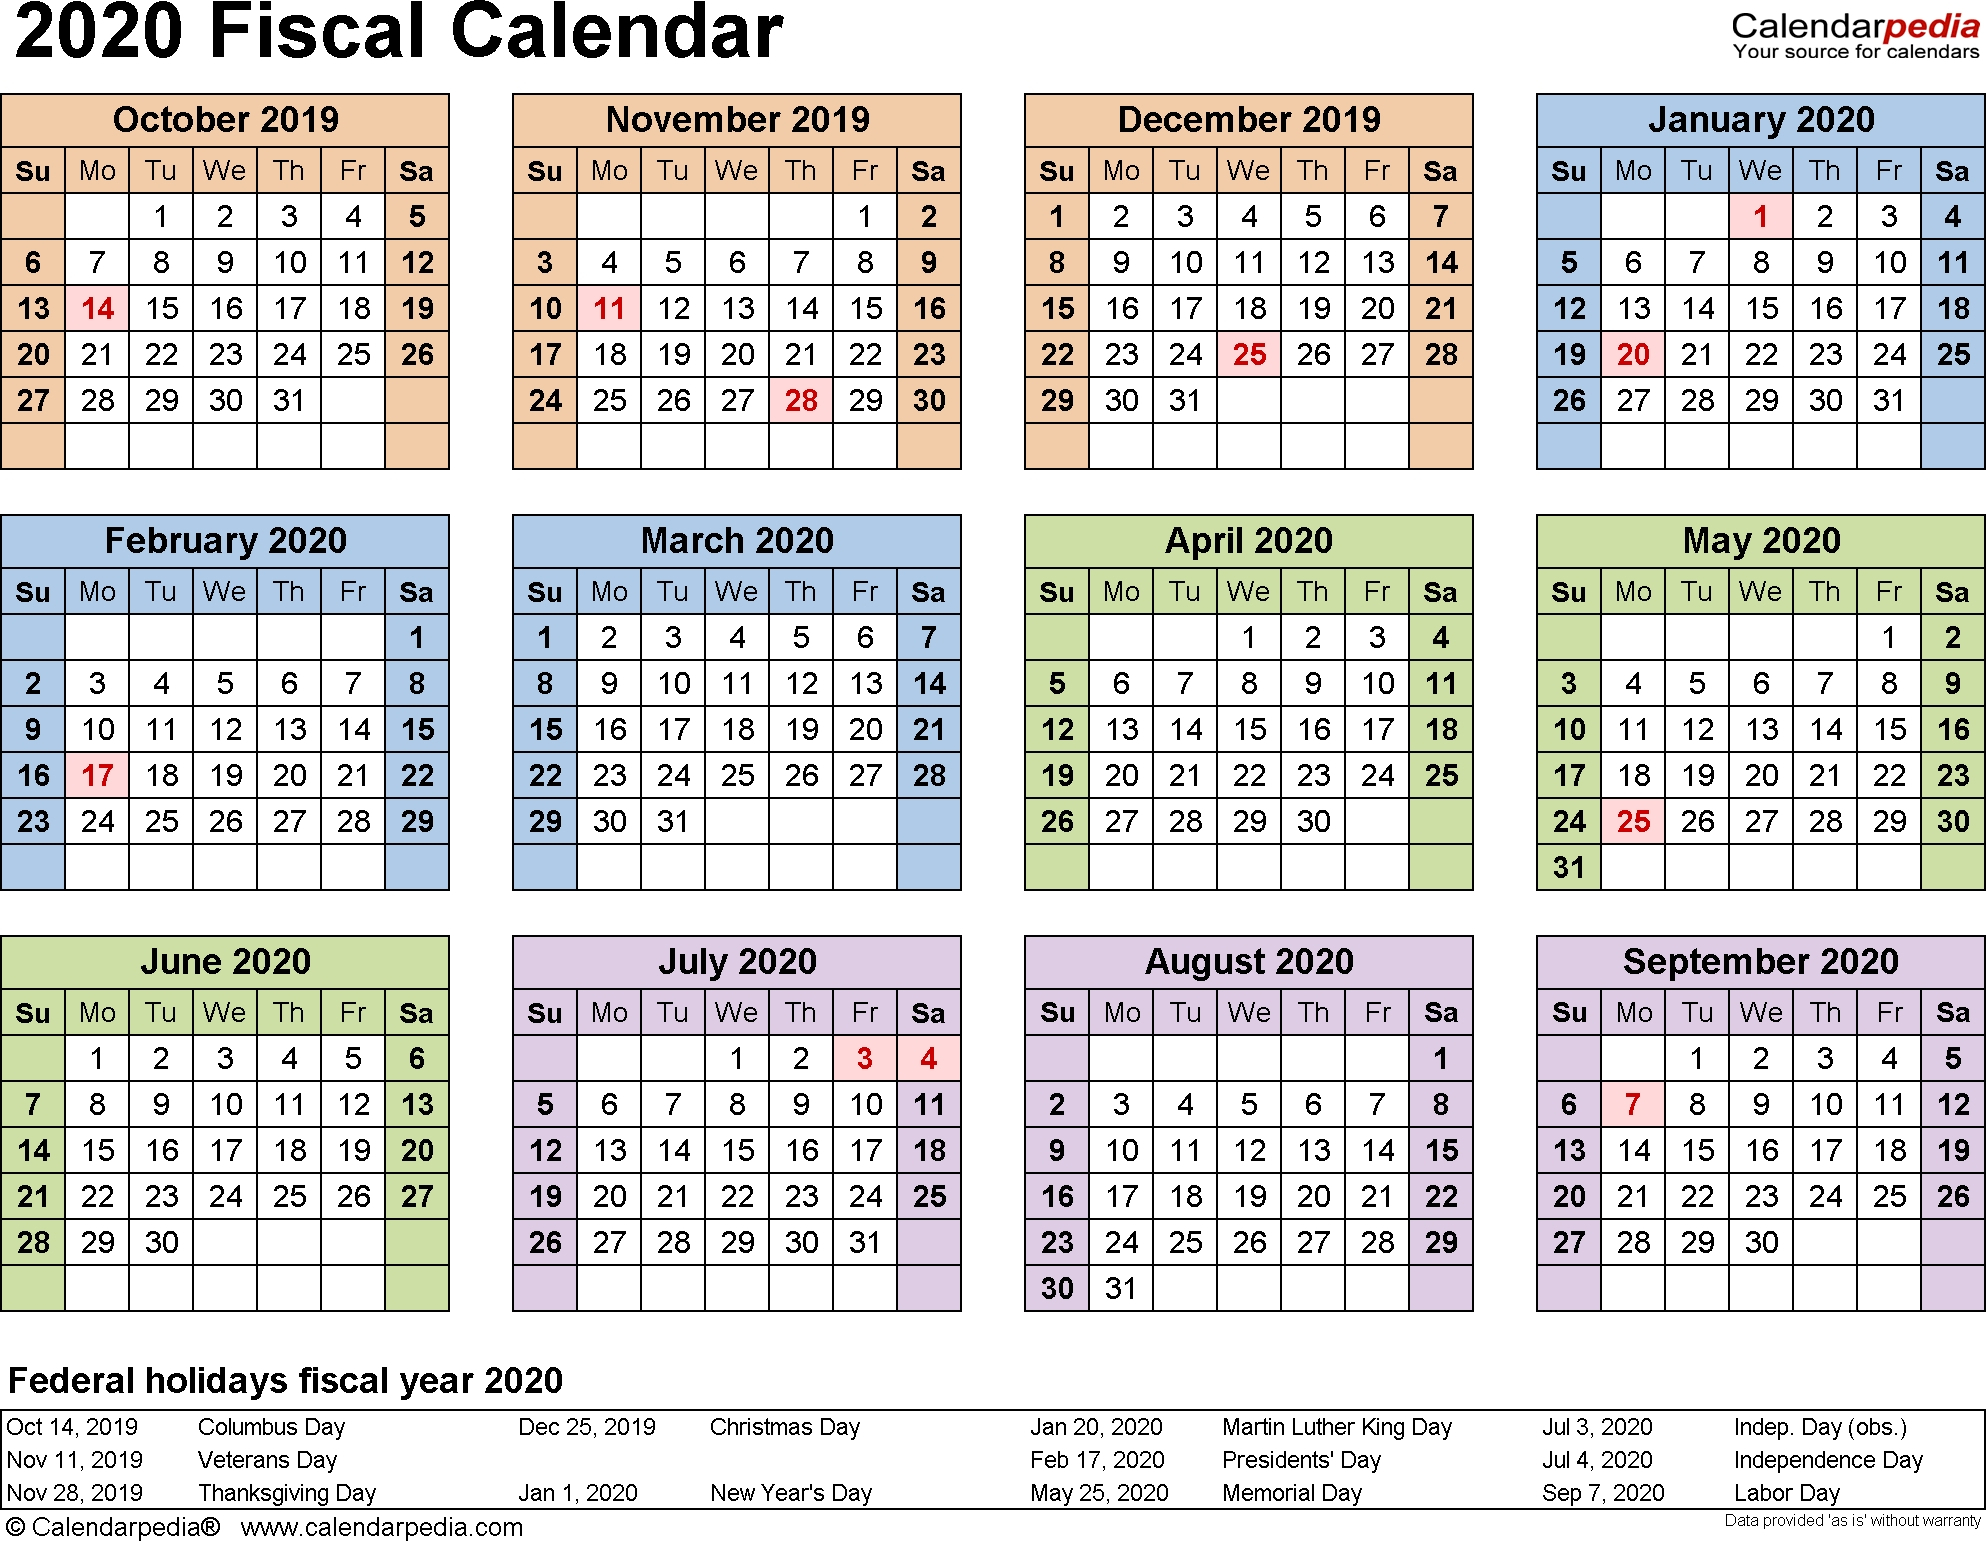 Payroll Calendar Dod 2020 | Payroll Calendar 2020